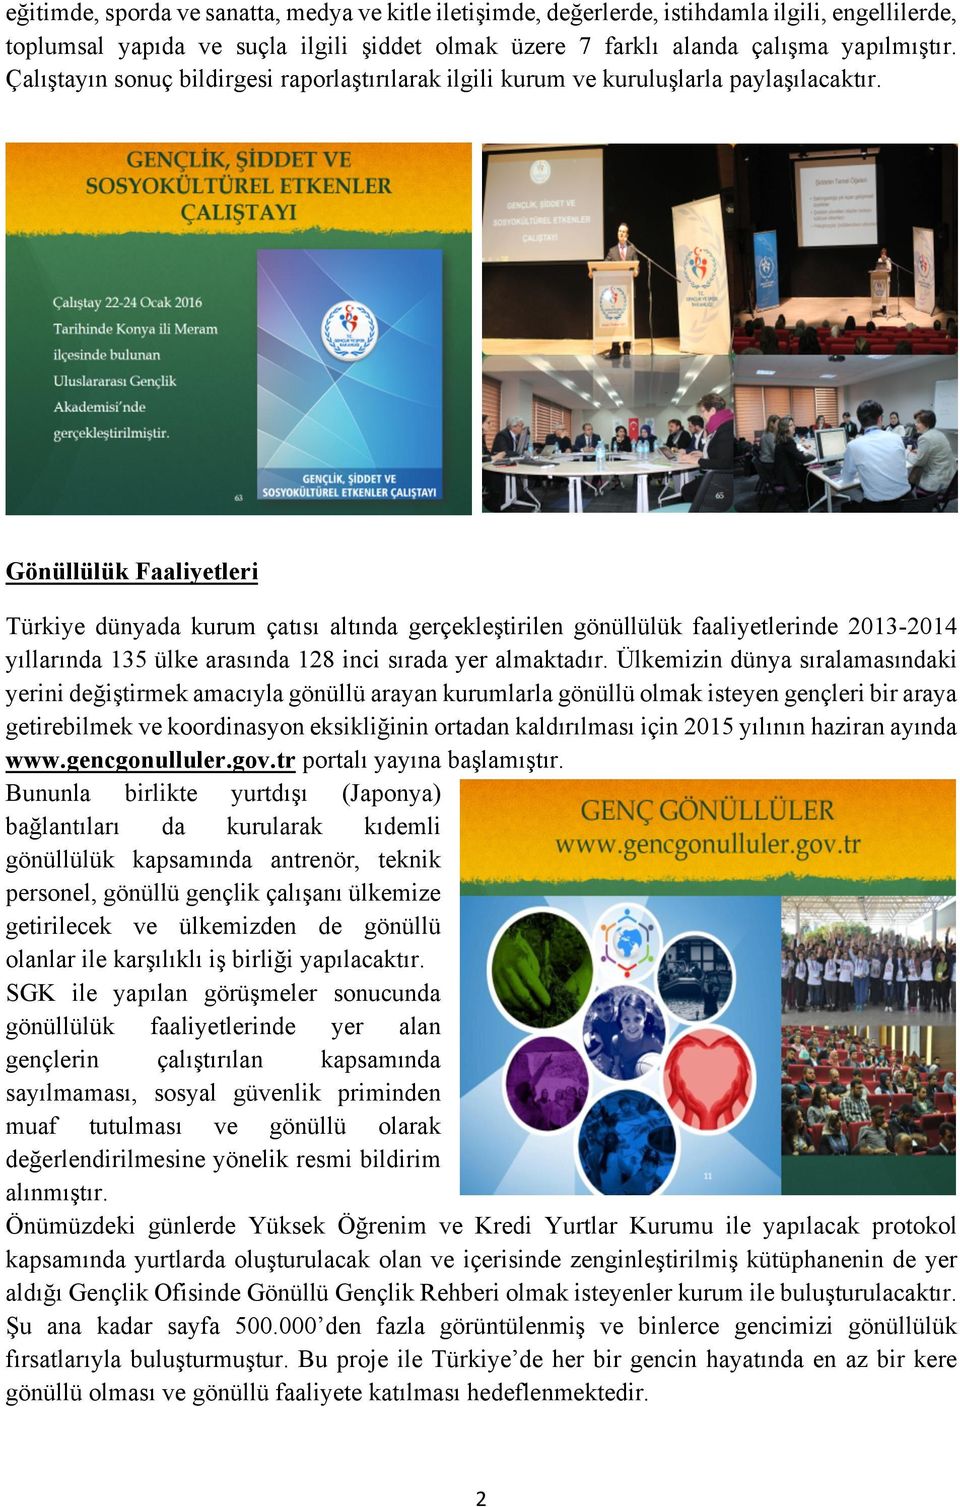 Gönüllülük Faaliyetleri Türkiye dünyada kurum çatısı altında gerçekleştirilen gönüllülük faaliyetlerinde 2013-2014 yıllarında 135 ülke arasında 128 inci sırada yer almaktadır.